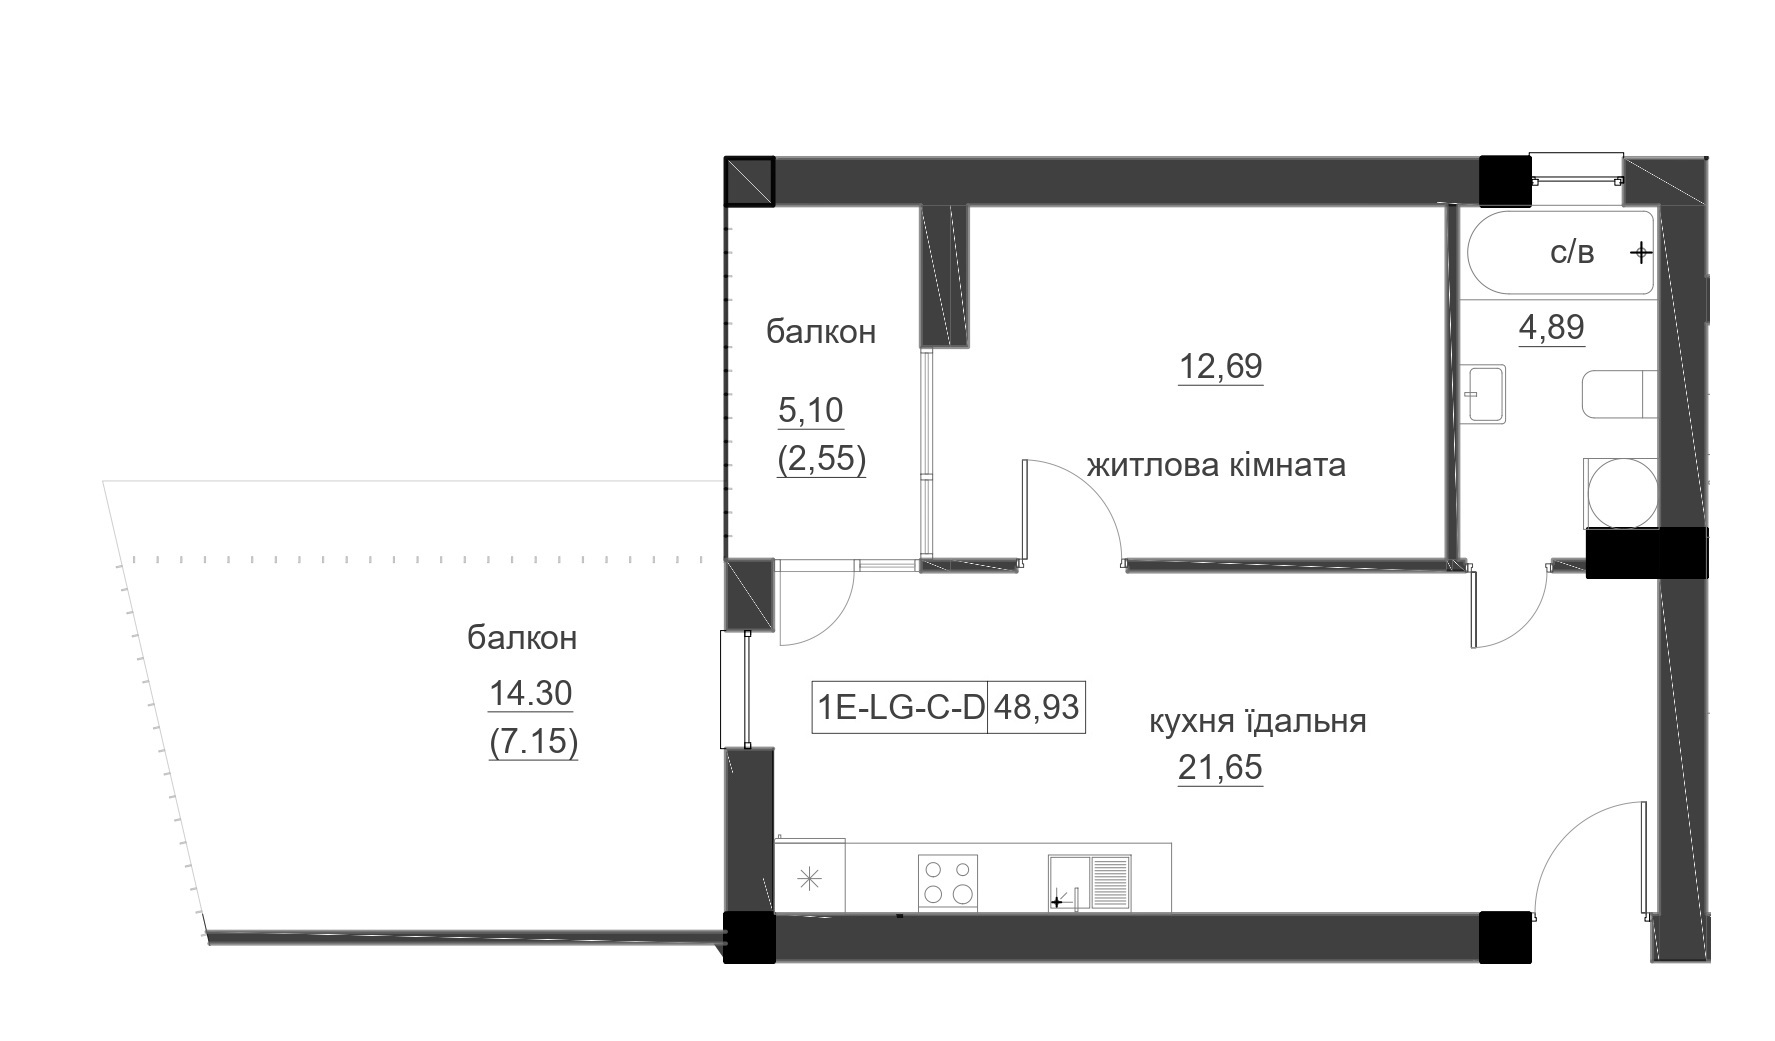 Планування 1-к квартира площею 48.93м2, LR-005-03/0002.